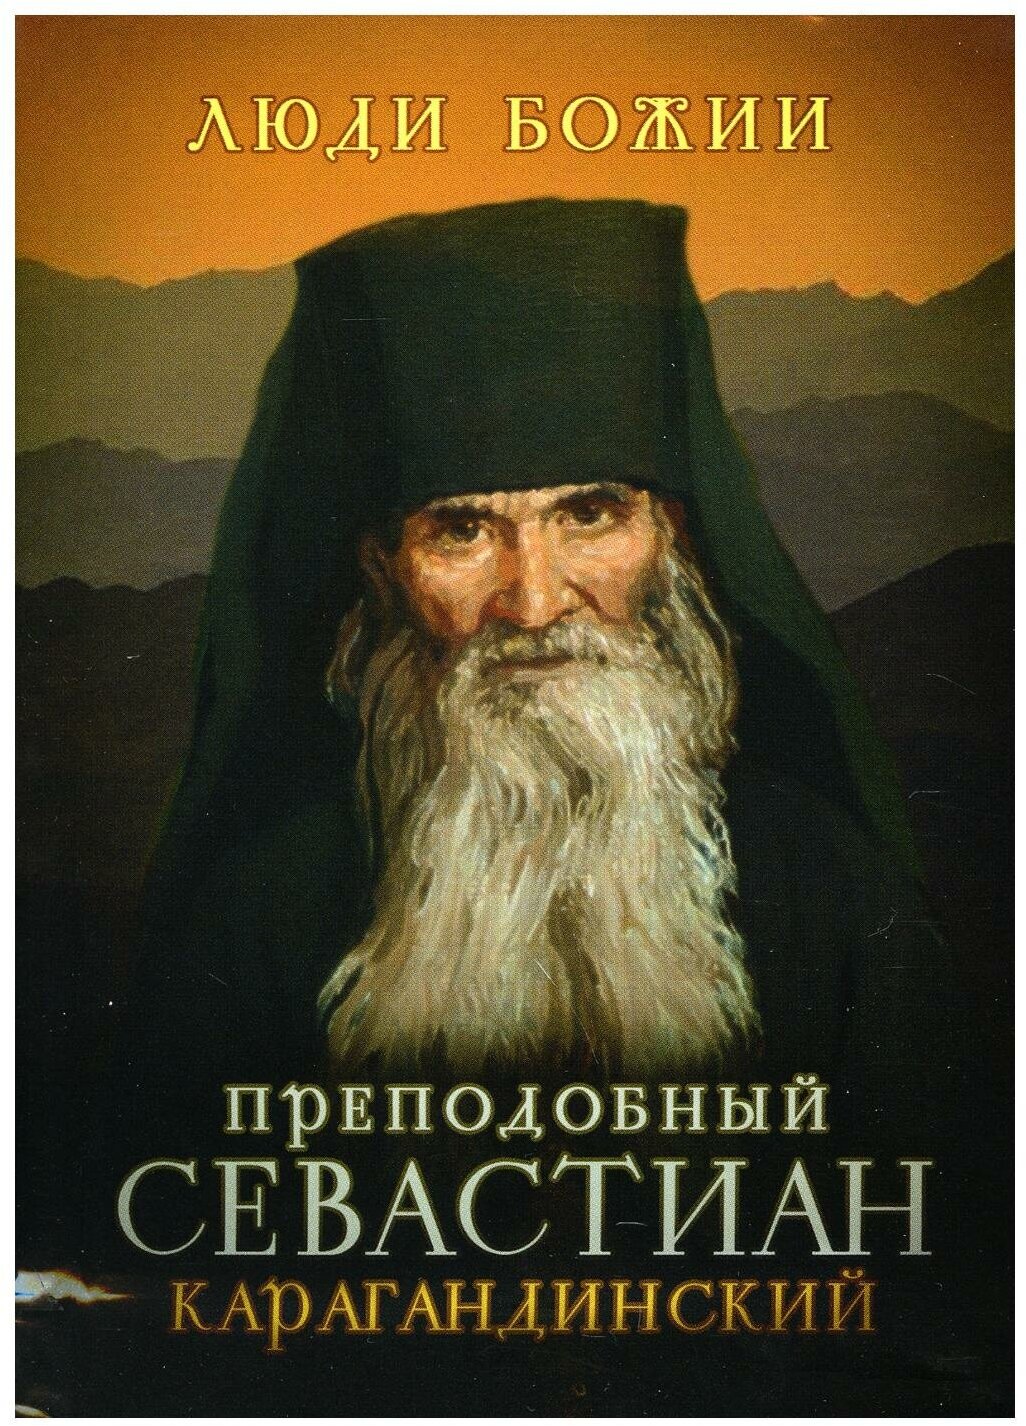 Преподобный Севастиан Карагандинский - фото №1